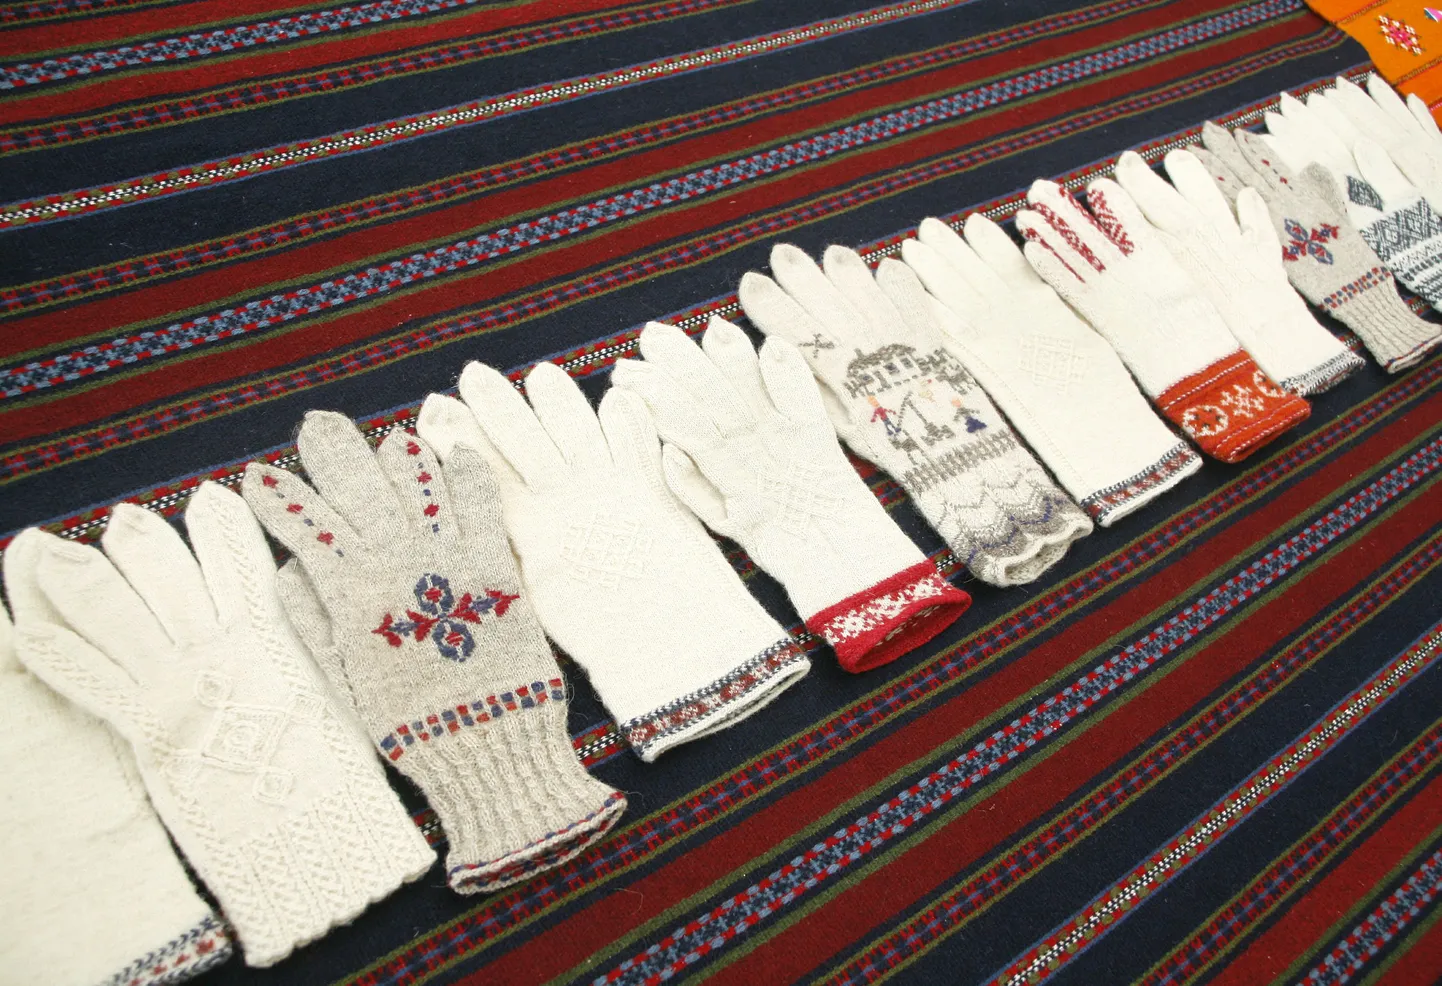 Endla sammassaalis näeb Viljandi Kultuuriakadeemia rahvusliku tekstiili eriala üliõpilastööde näitust "Käe soe kiri loe".